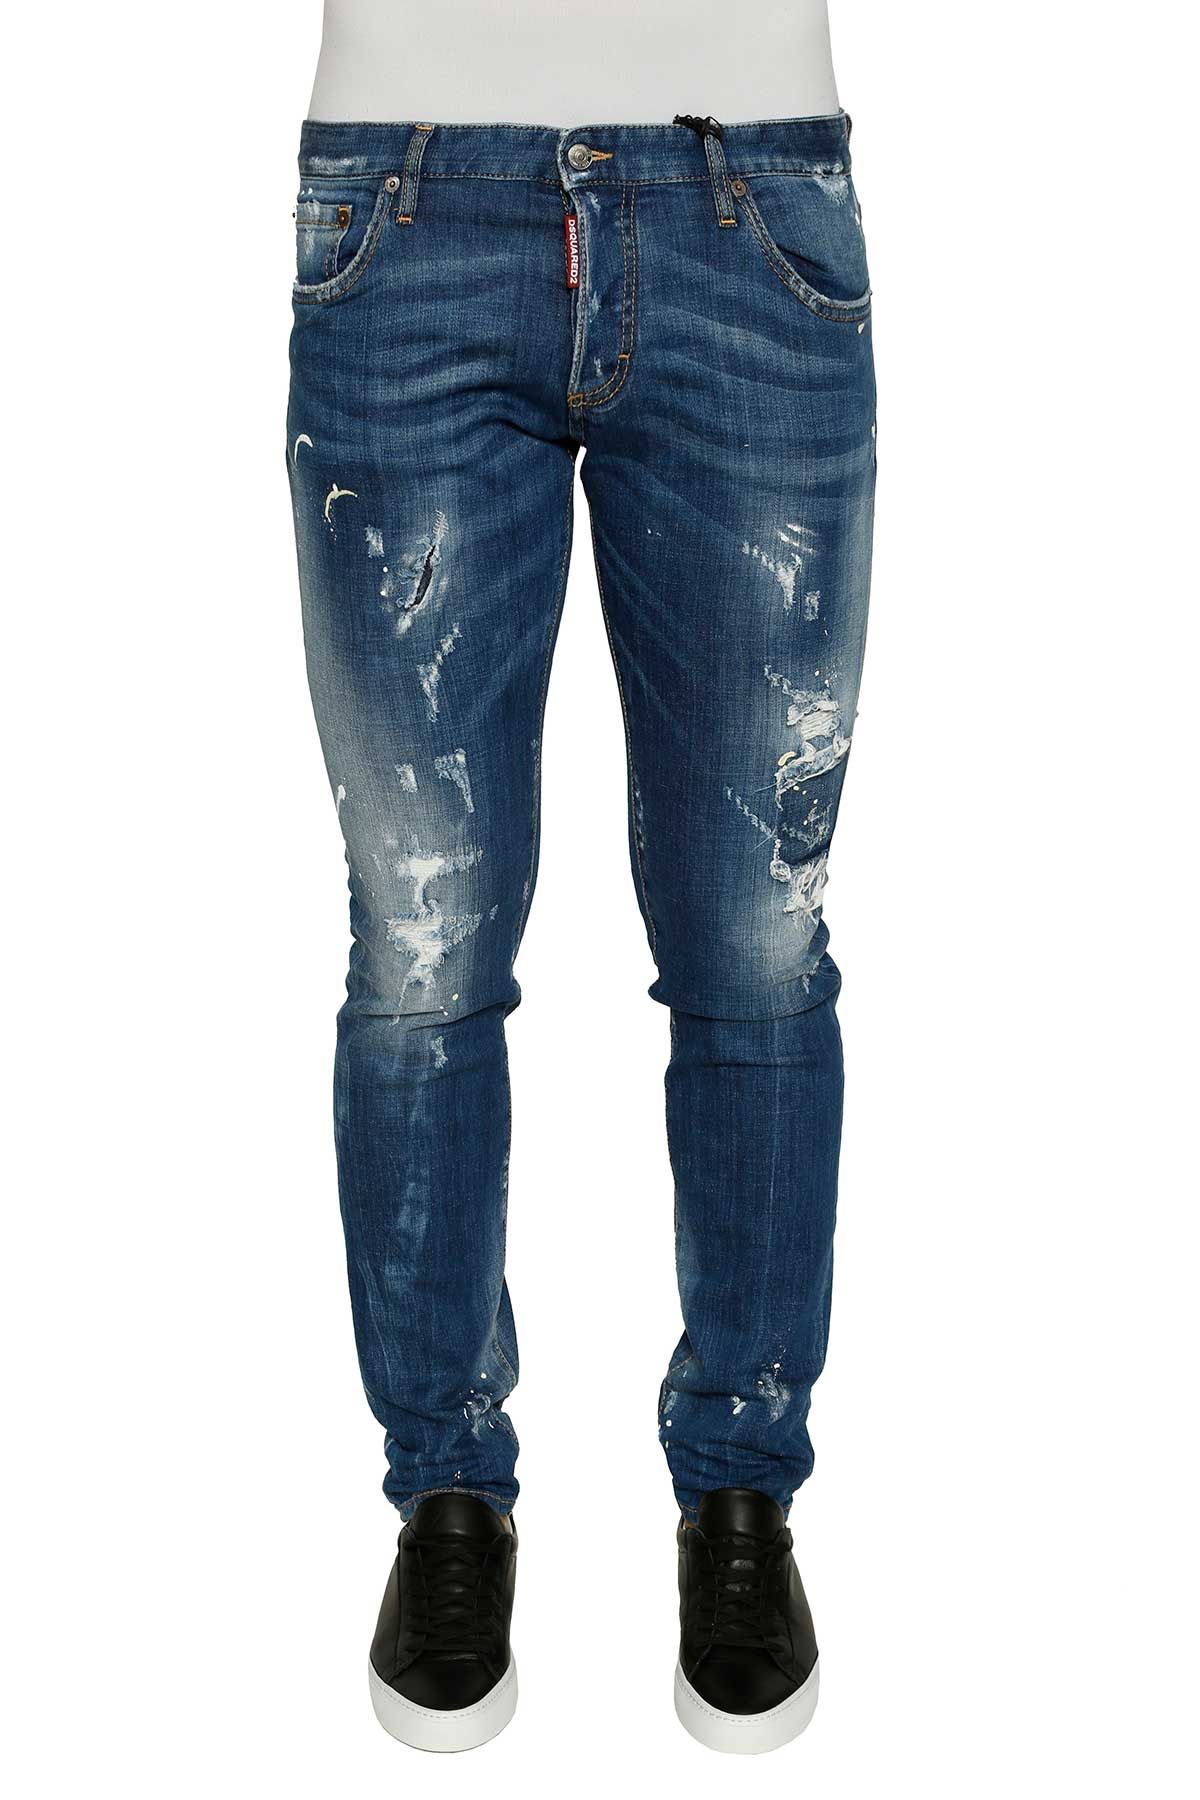 Dsquared2 - Dsquared2 Five Pockets Jeans - Blue jeans, Men's Jeans ...